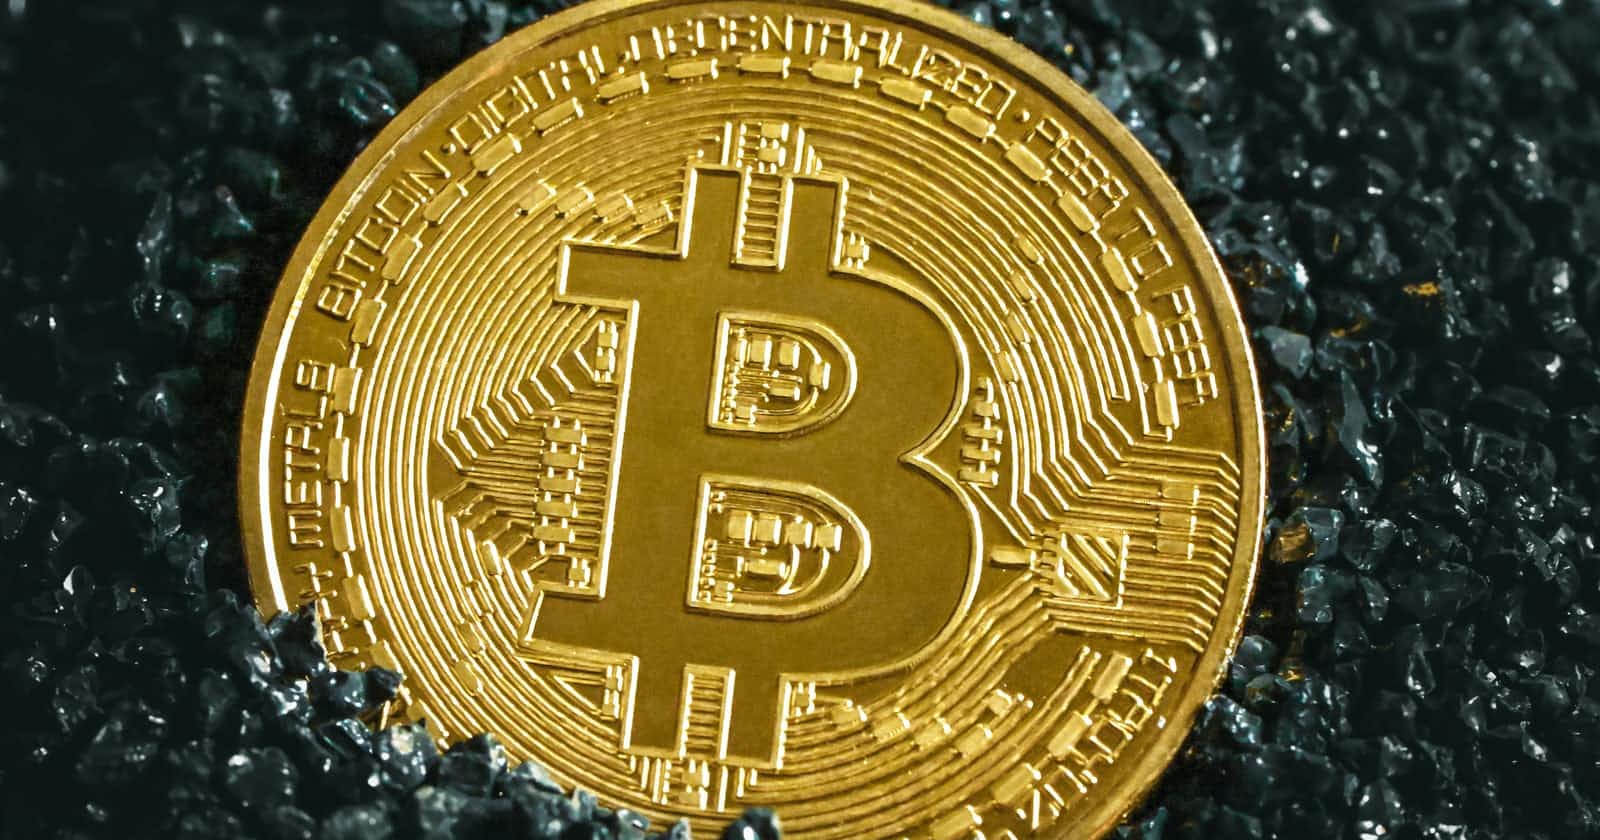 Understanding Bitcoin's Hidden value